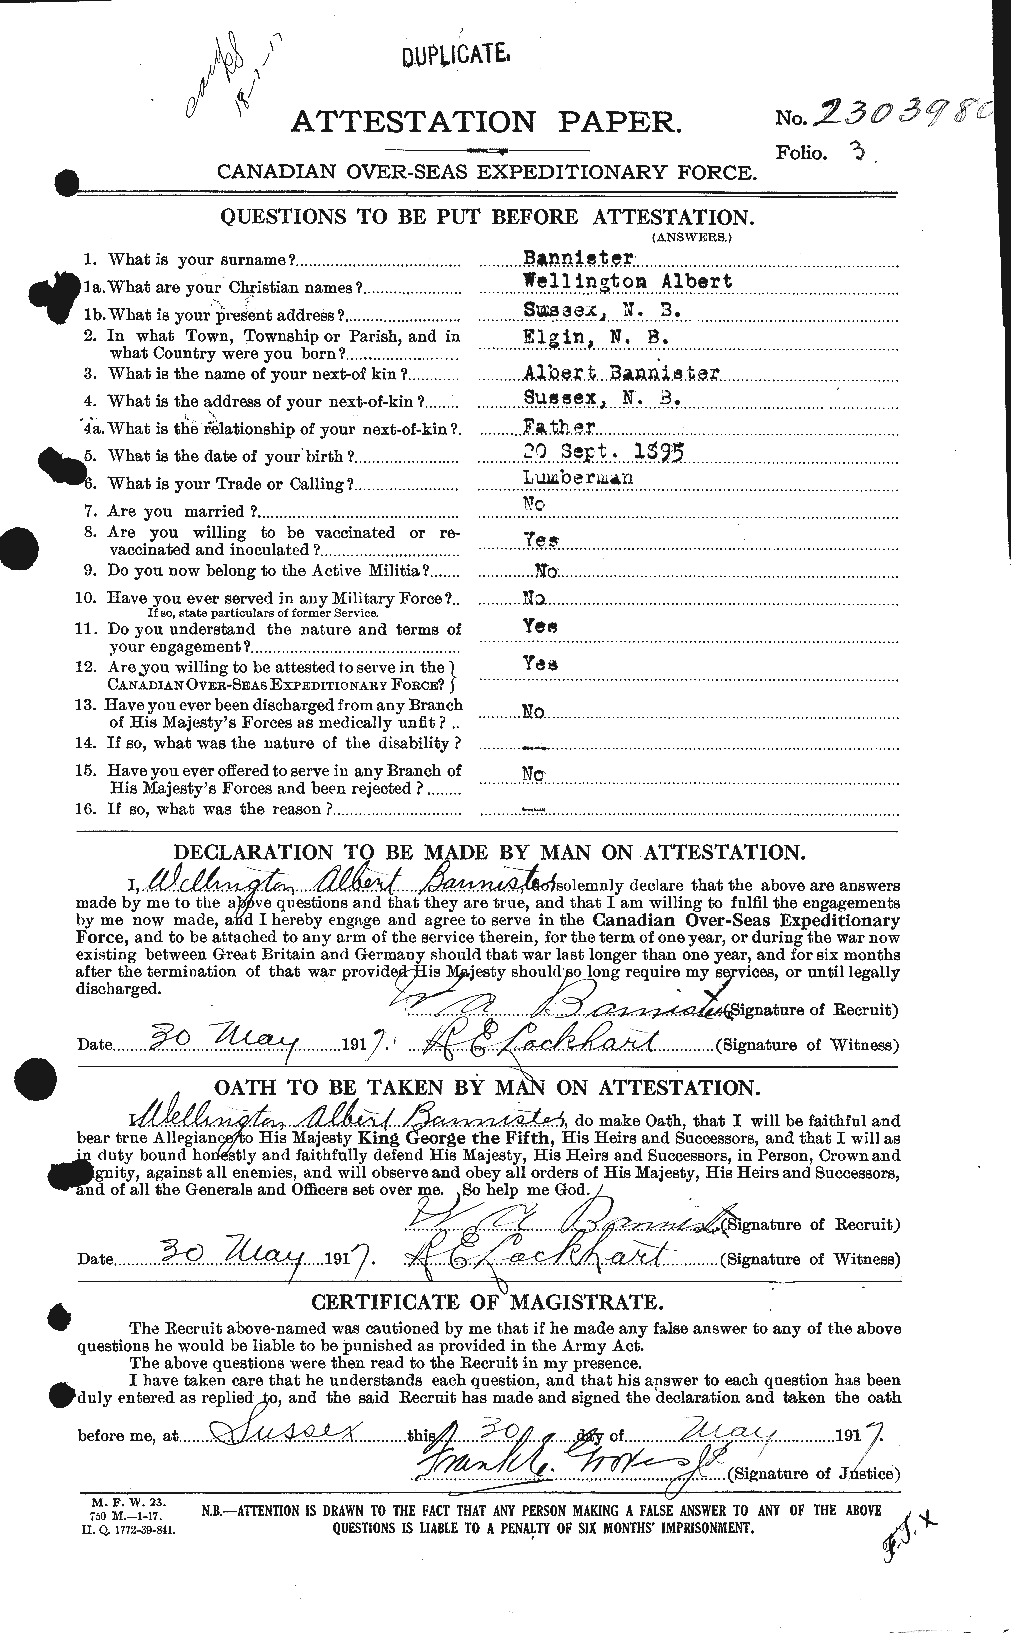 Dossiers du Personnel de la Première Guerre mondiale - CEC 224756a